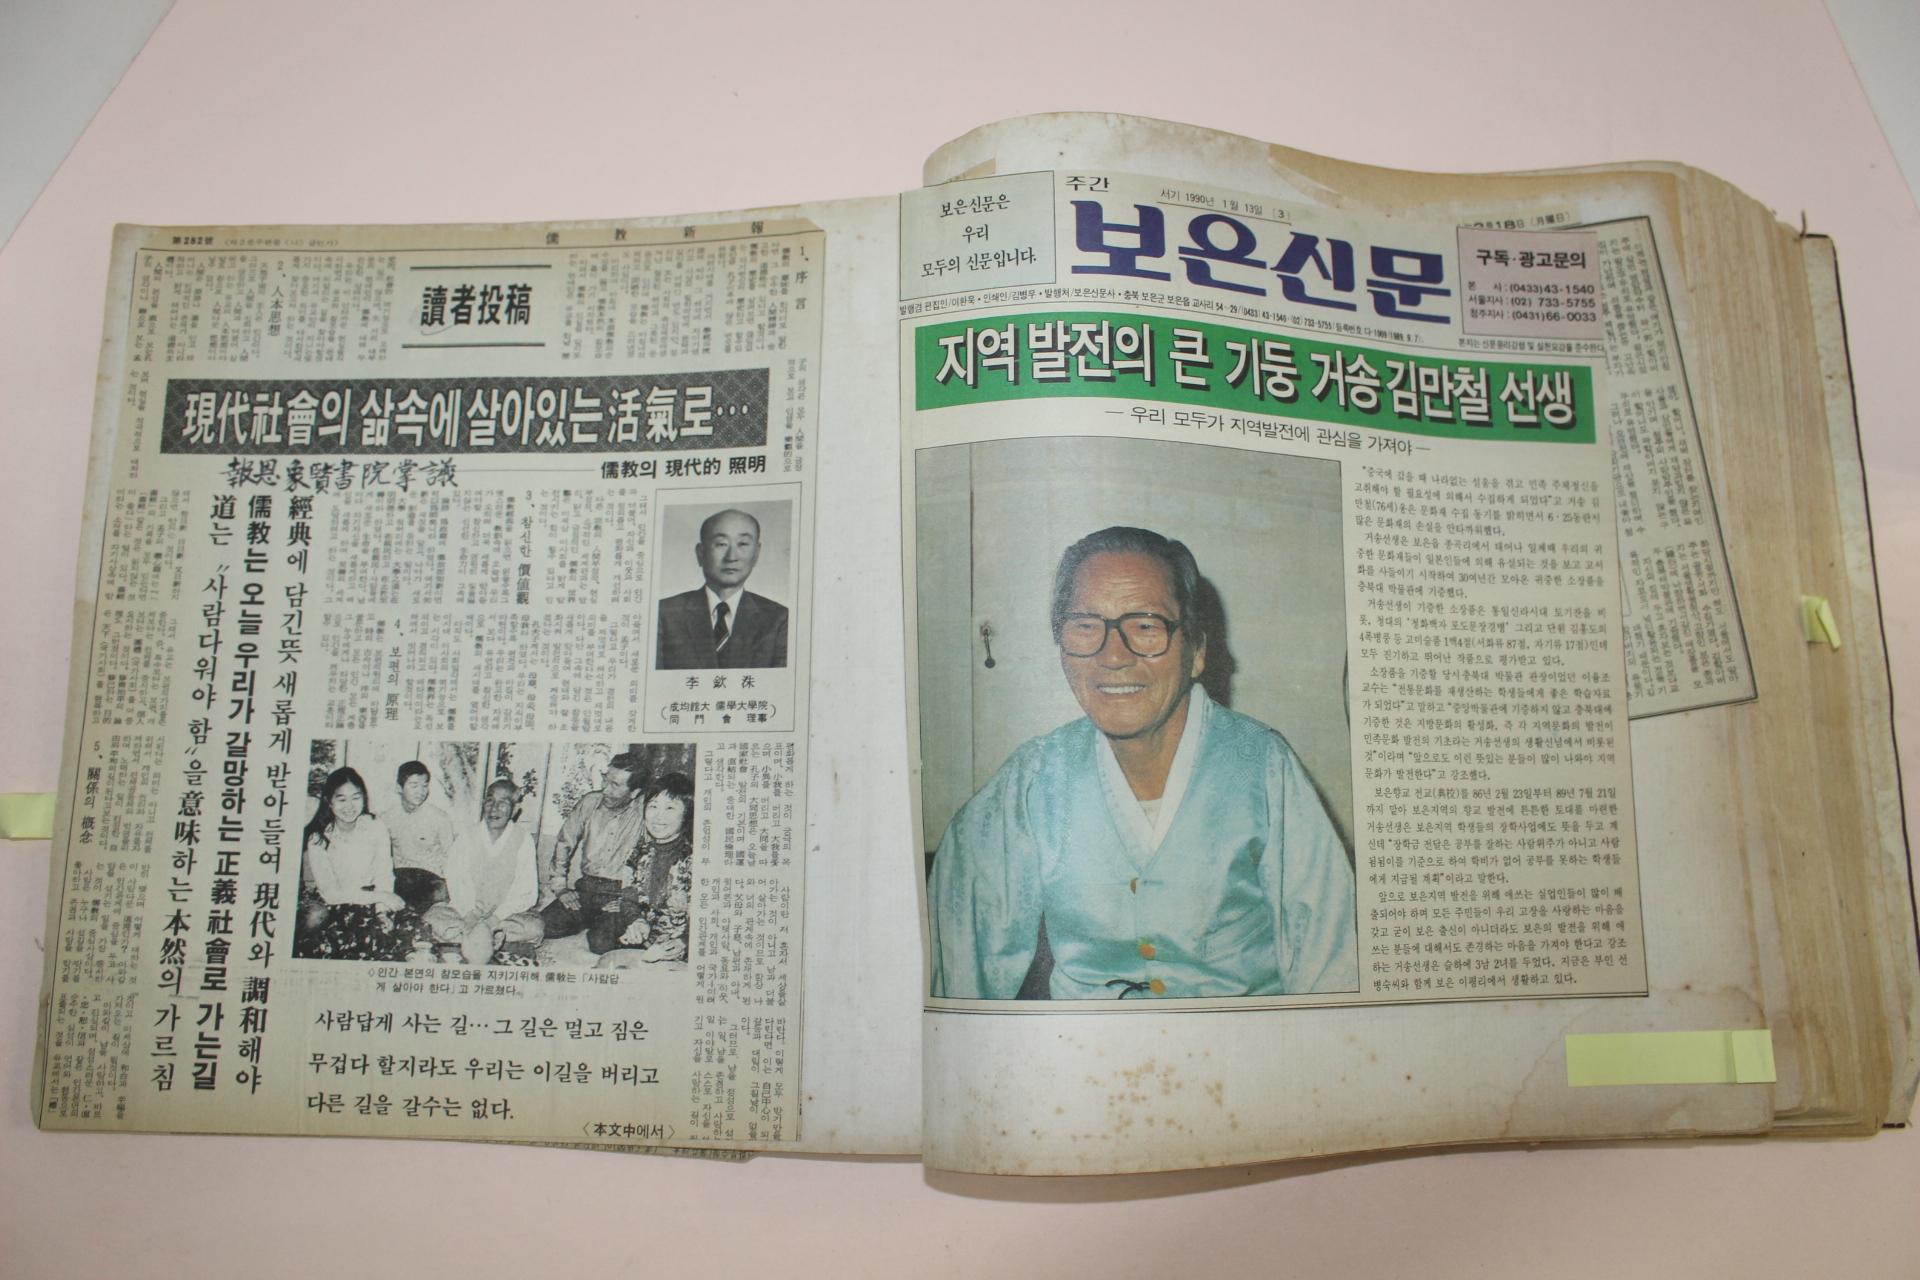 1978년,79년 충북보은 김만철(金萬哲)선생 내방인사 방명록과 보은관련스크렙